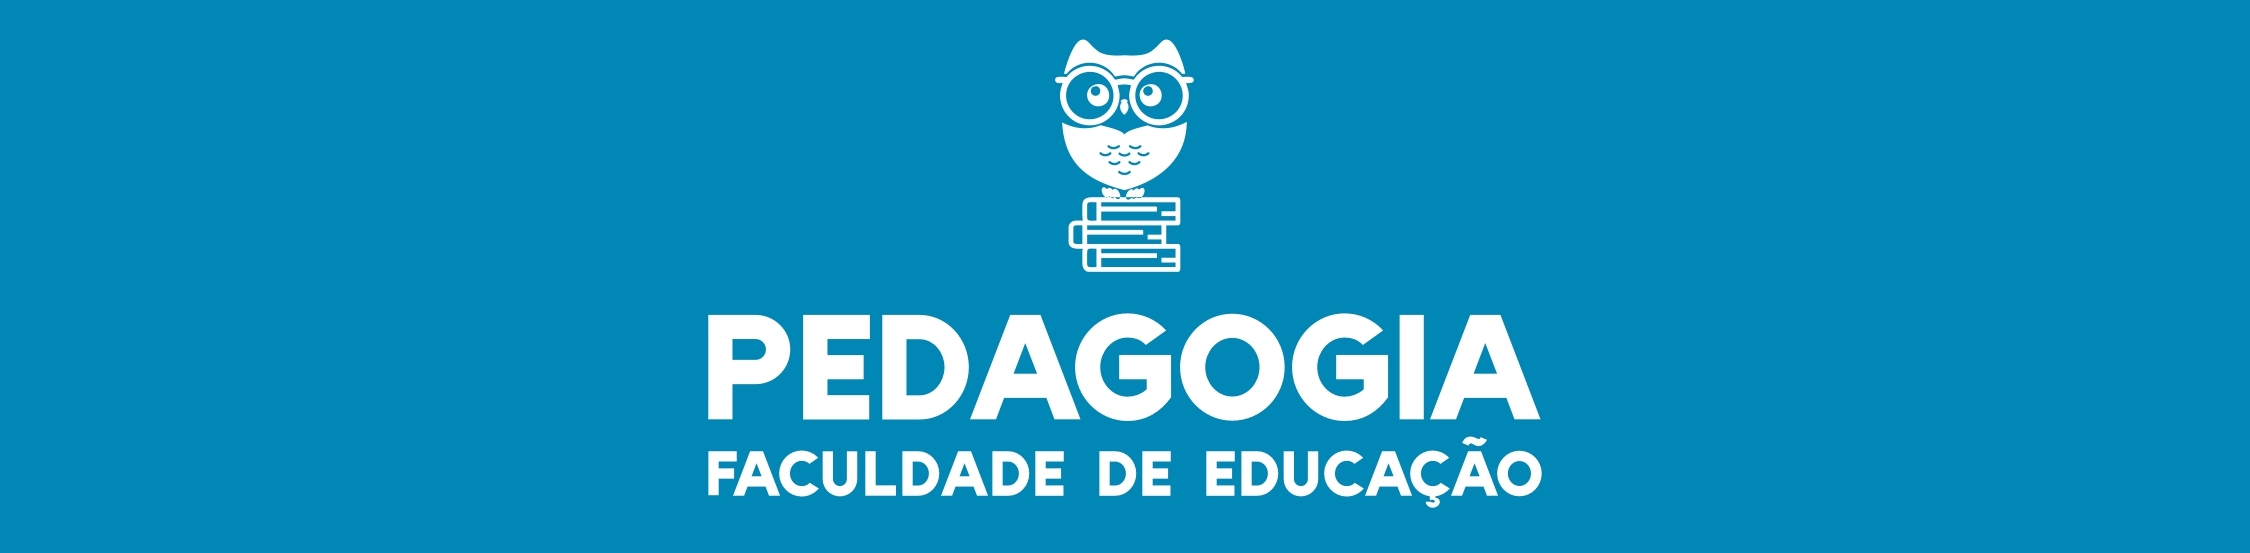 Acadêmica do Curso de Pedagogia é aprovada em Mestrado em Educação da UFMS- Campo  Grande - Campus de Naviraí